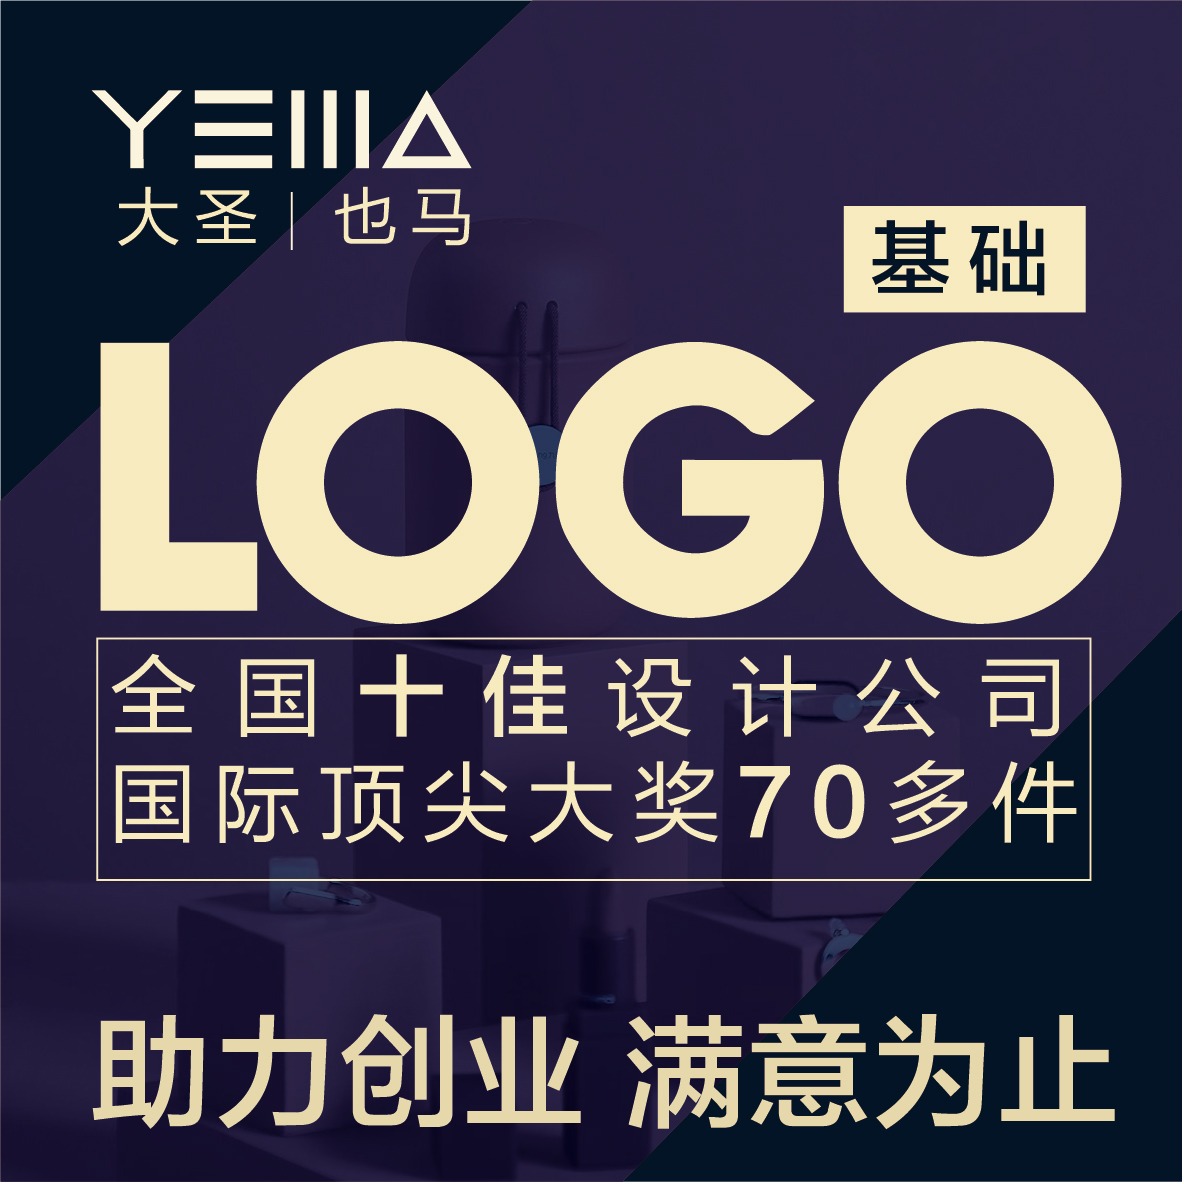 【大圣品牌】餐饮设计LOGO商标设计标志制作组长设计logo